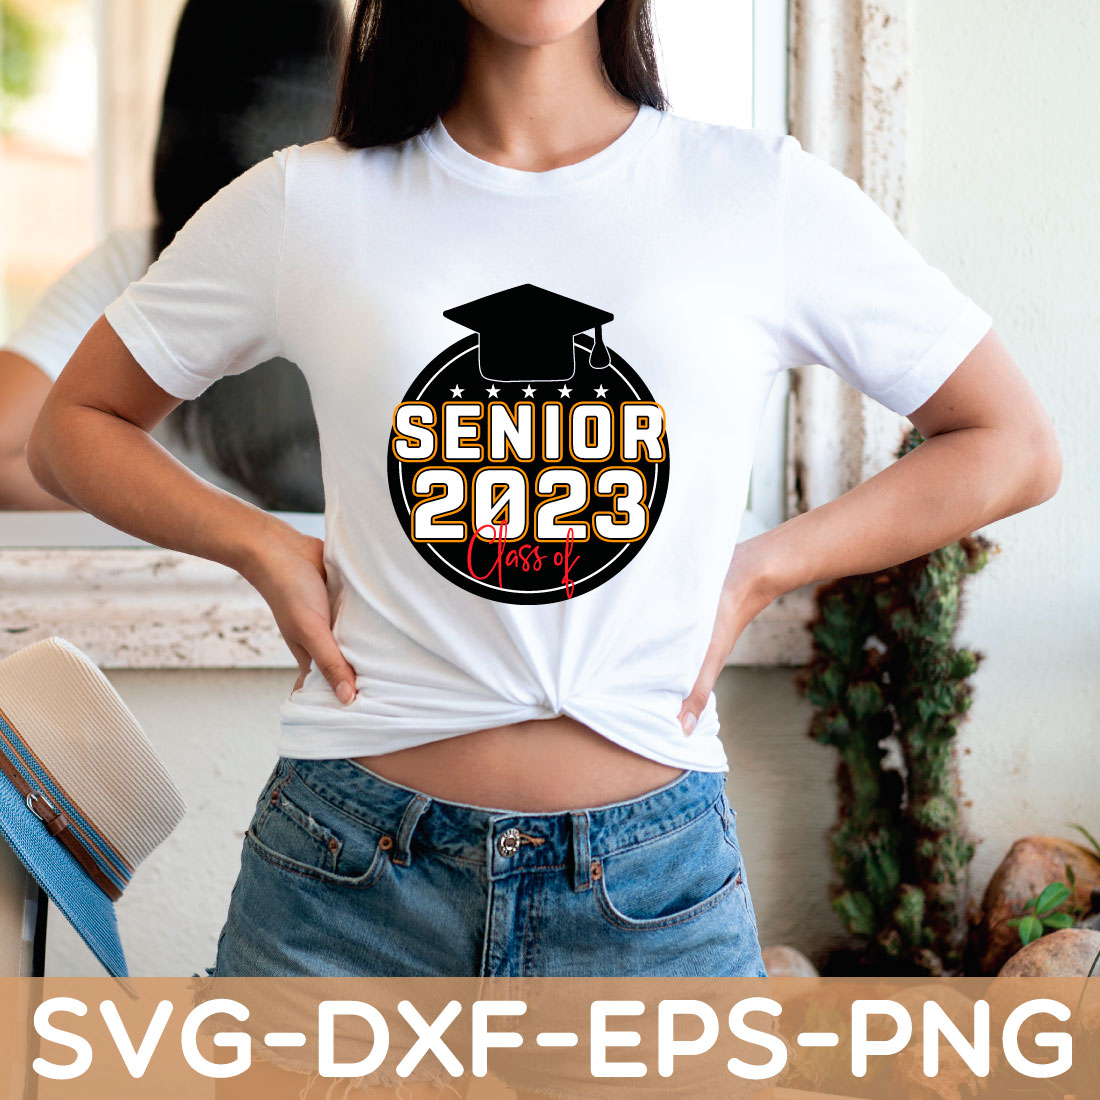 SENIOR 2023 CLASS OF SVG,GRADUATION SHIRT,SVG preview image.